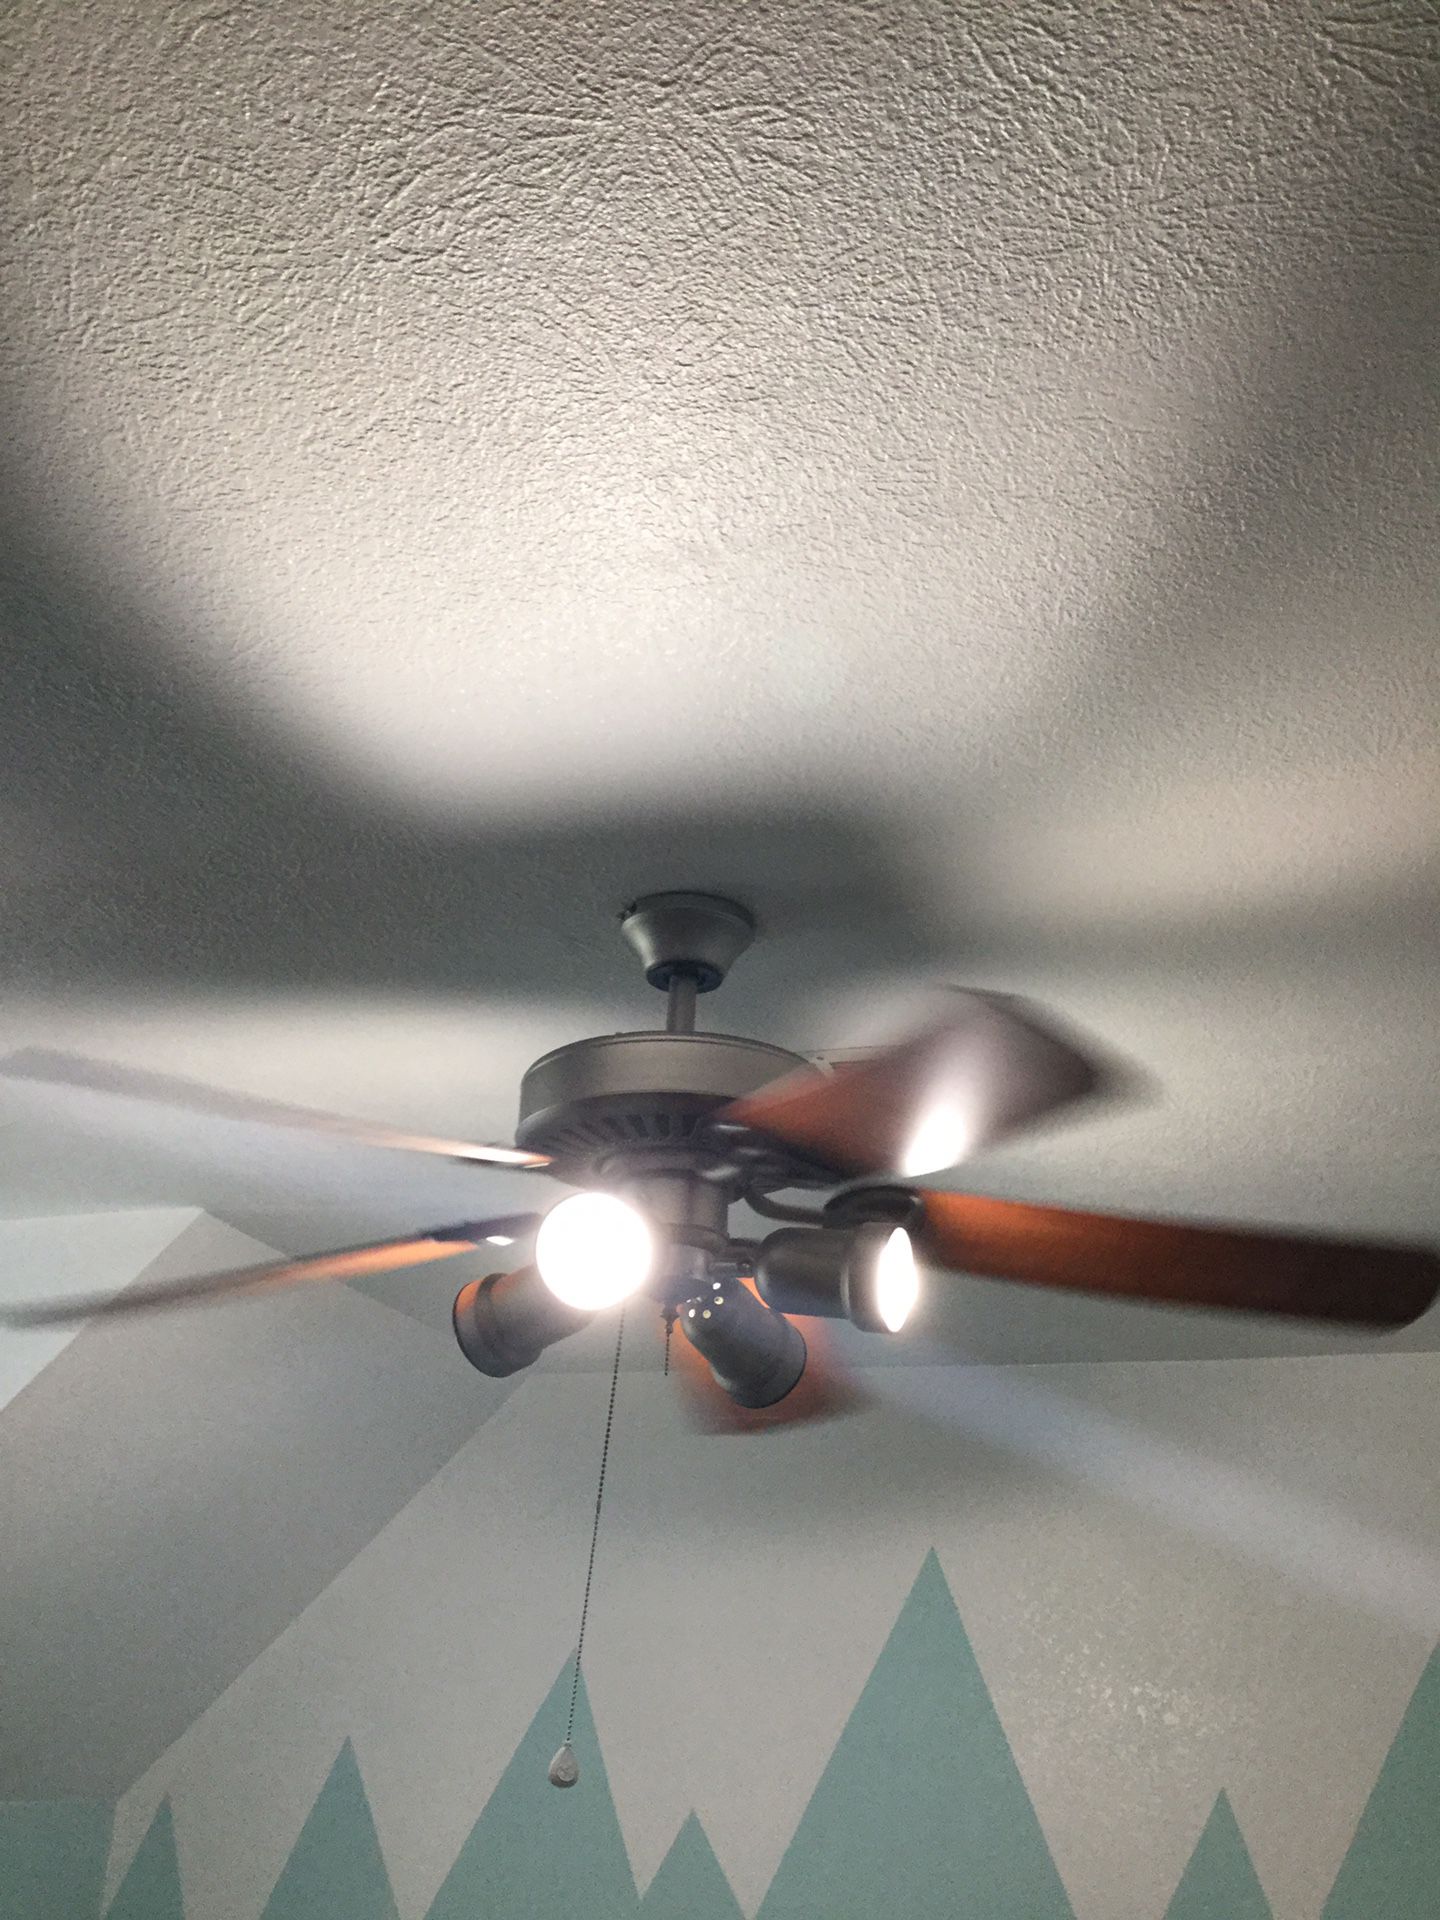 Fan with light